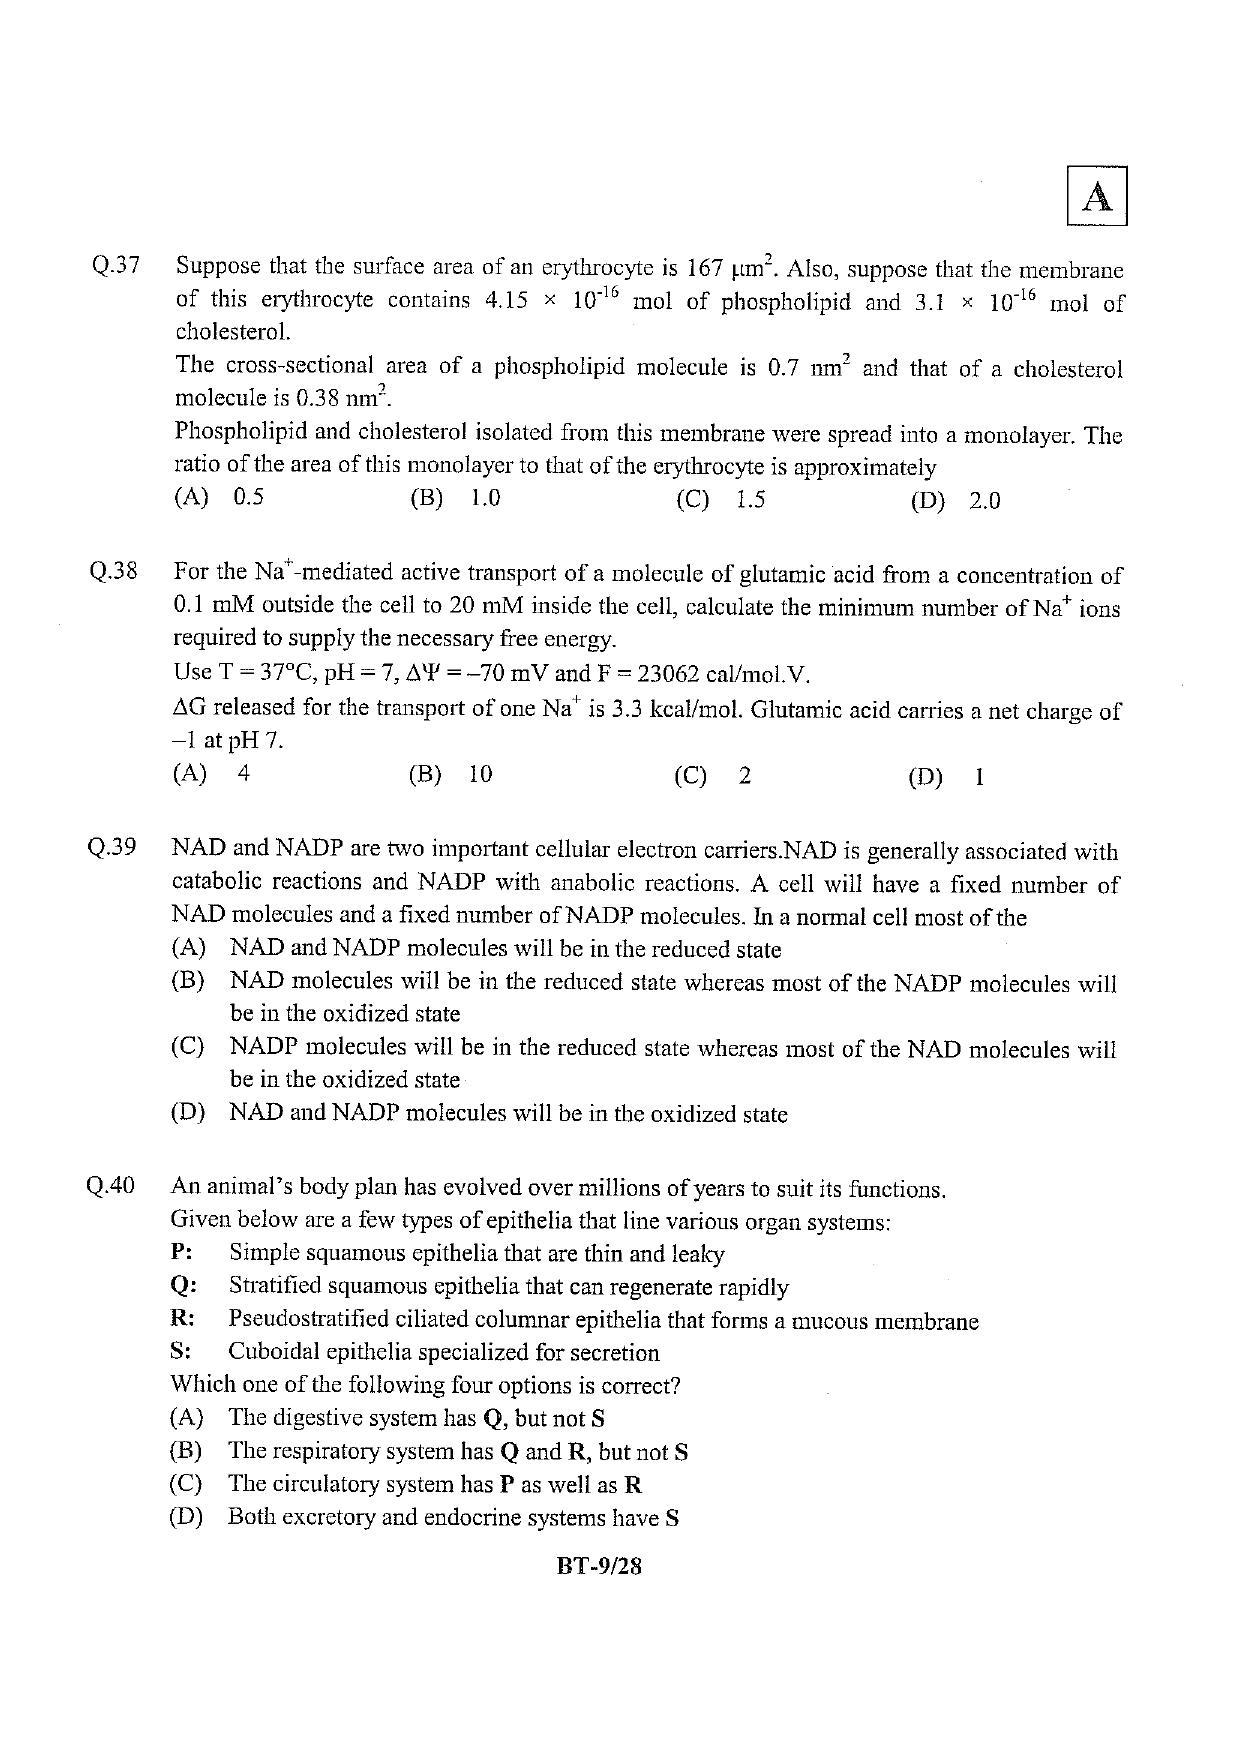 JAM 2013: BT Question Paper - Page 10